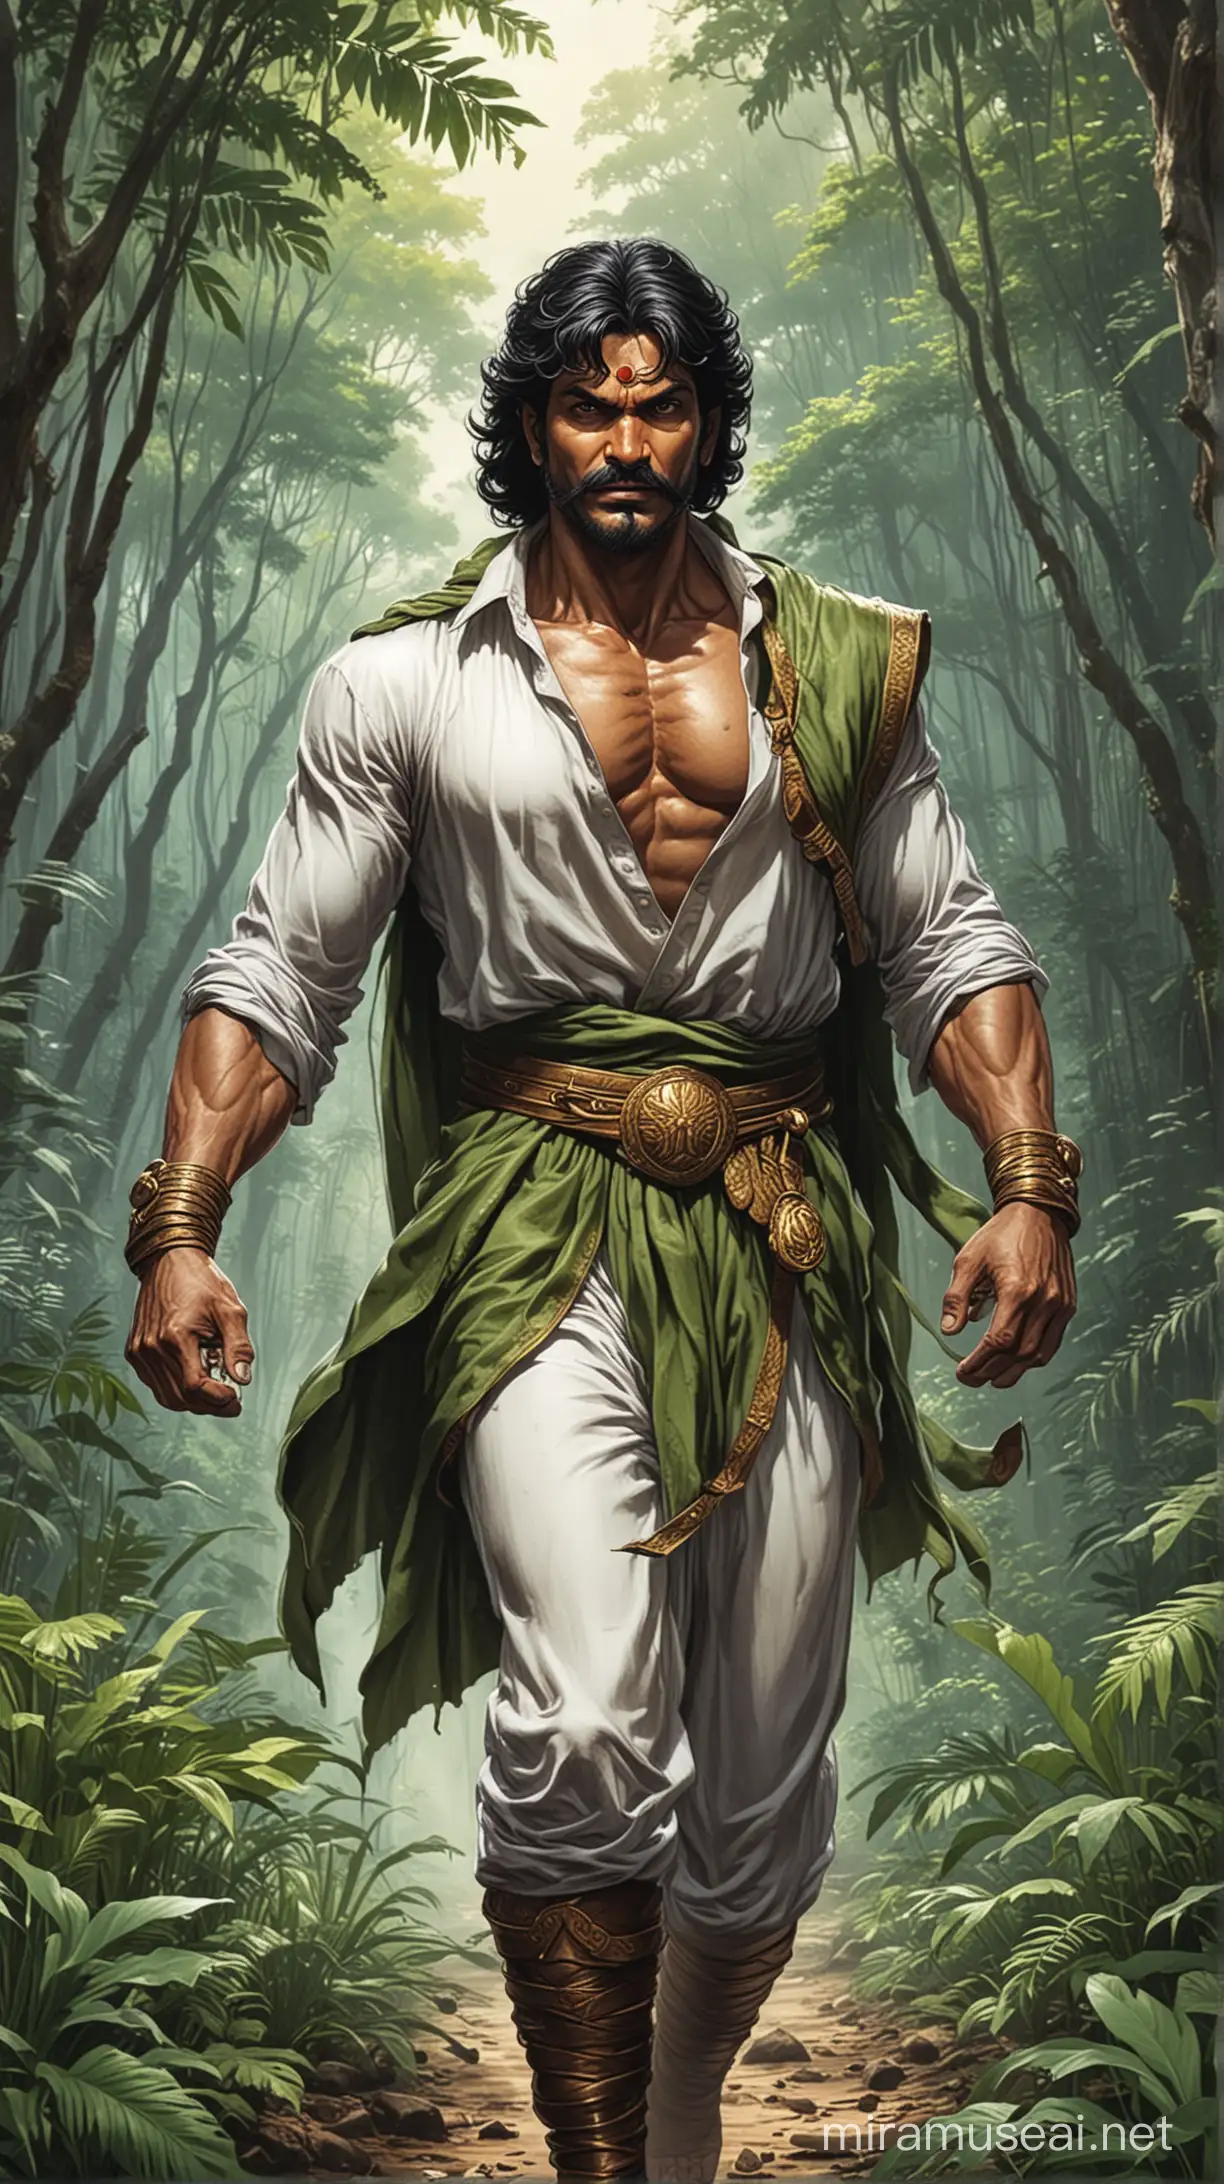 नागराज nagraj, Indian raj comics superhero, walking in jungle